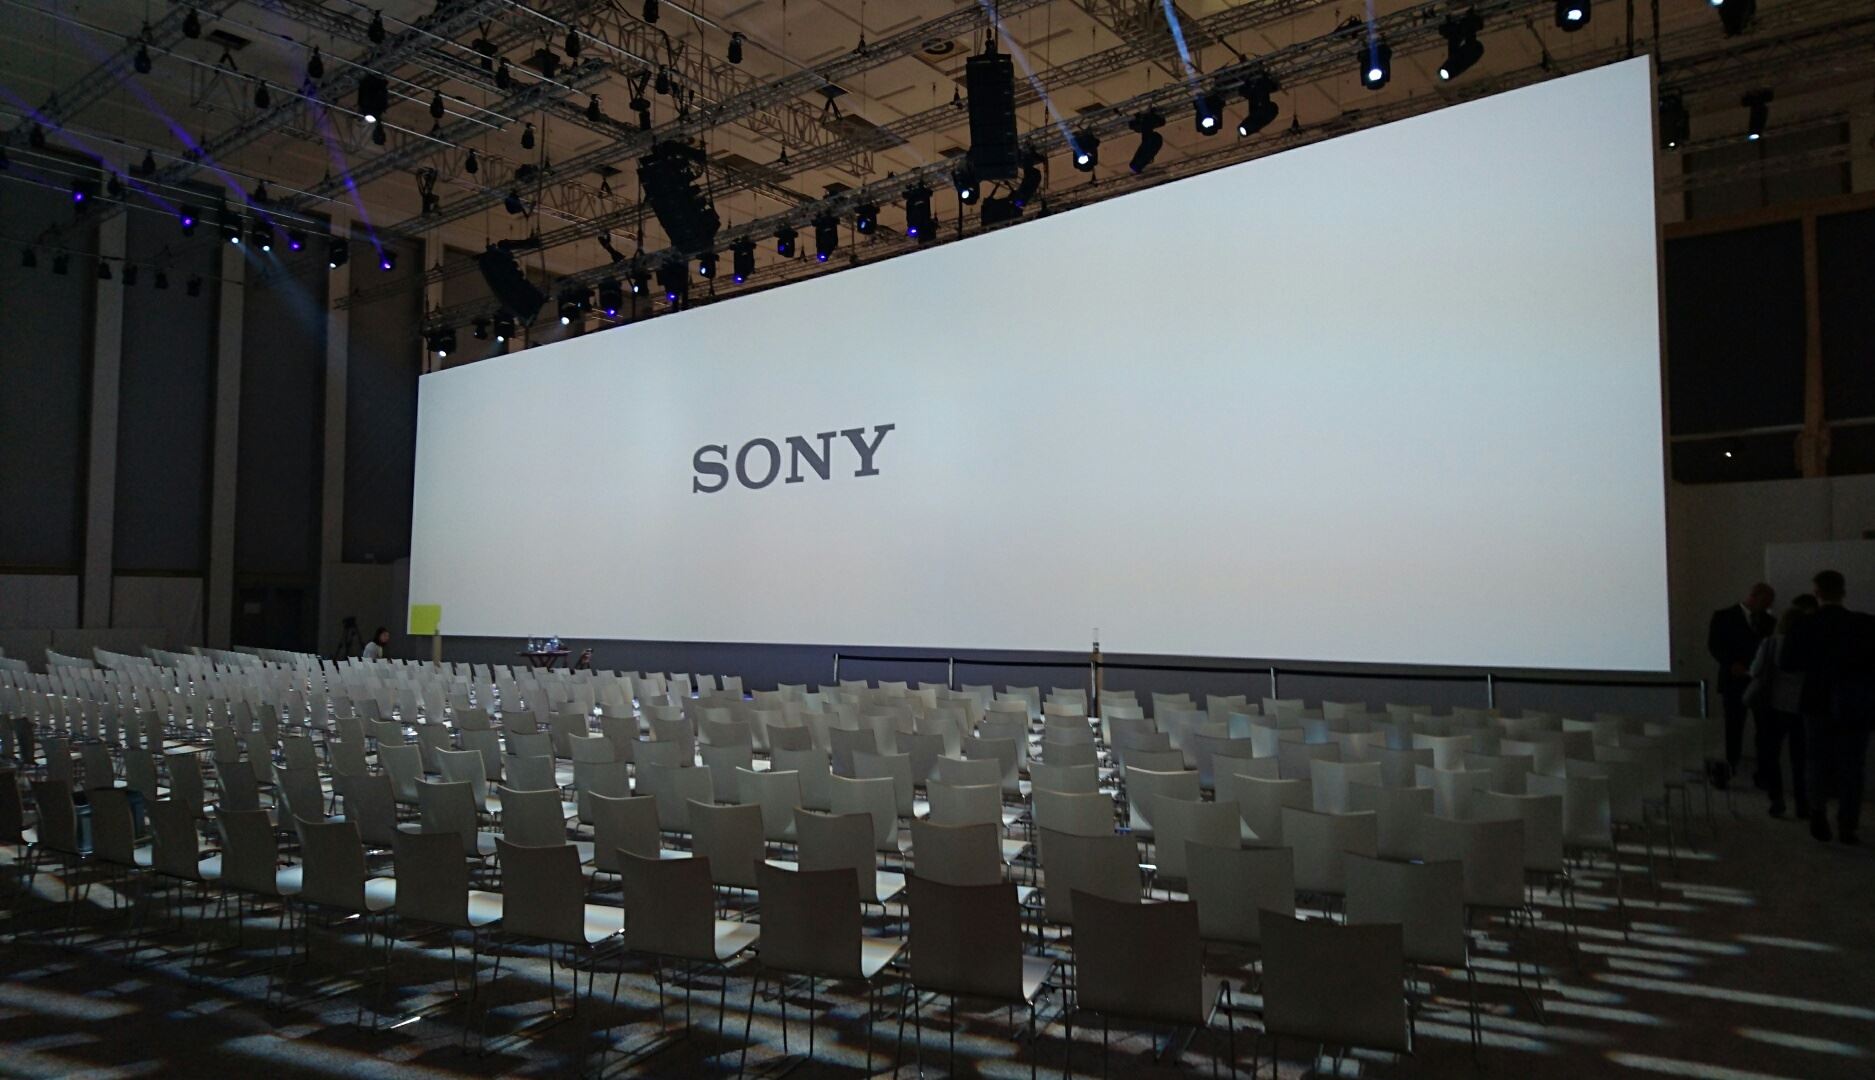 Na żywo: Konferencja Sony na IFA 2016